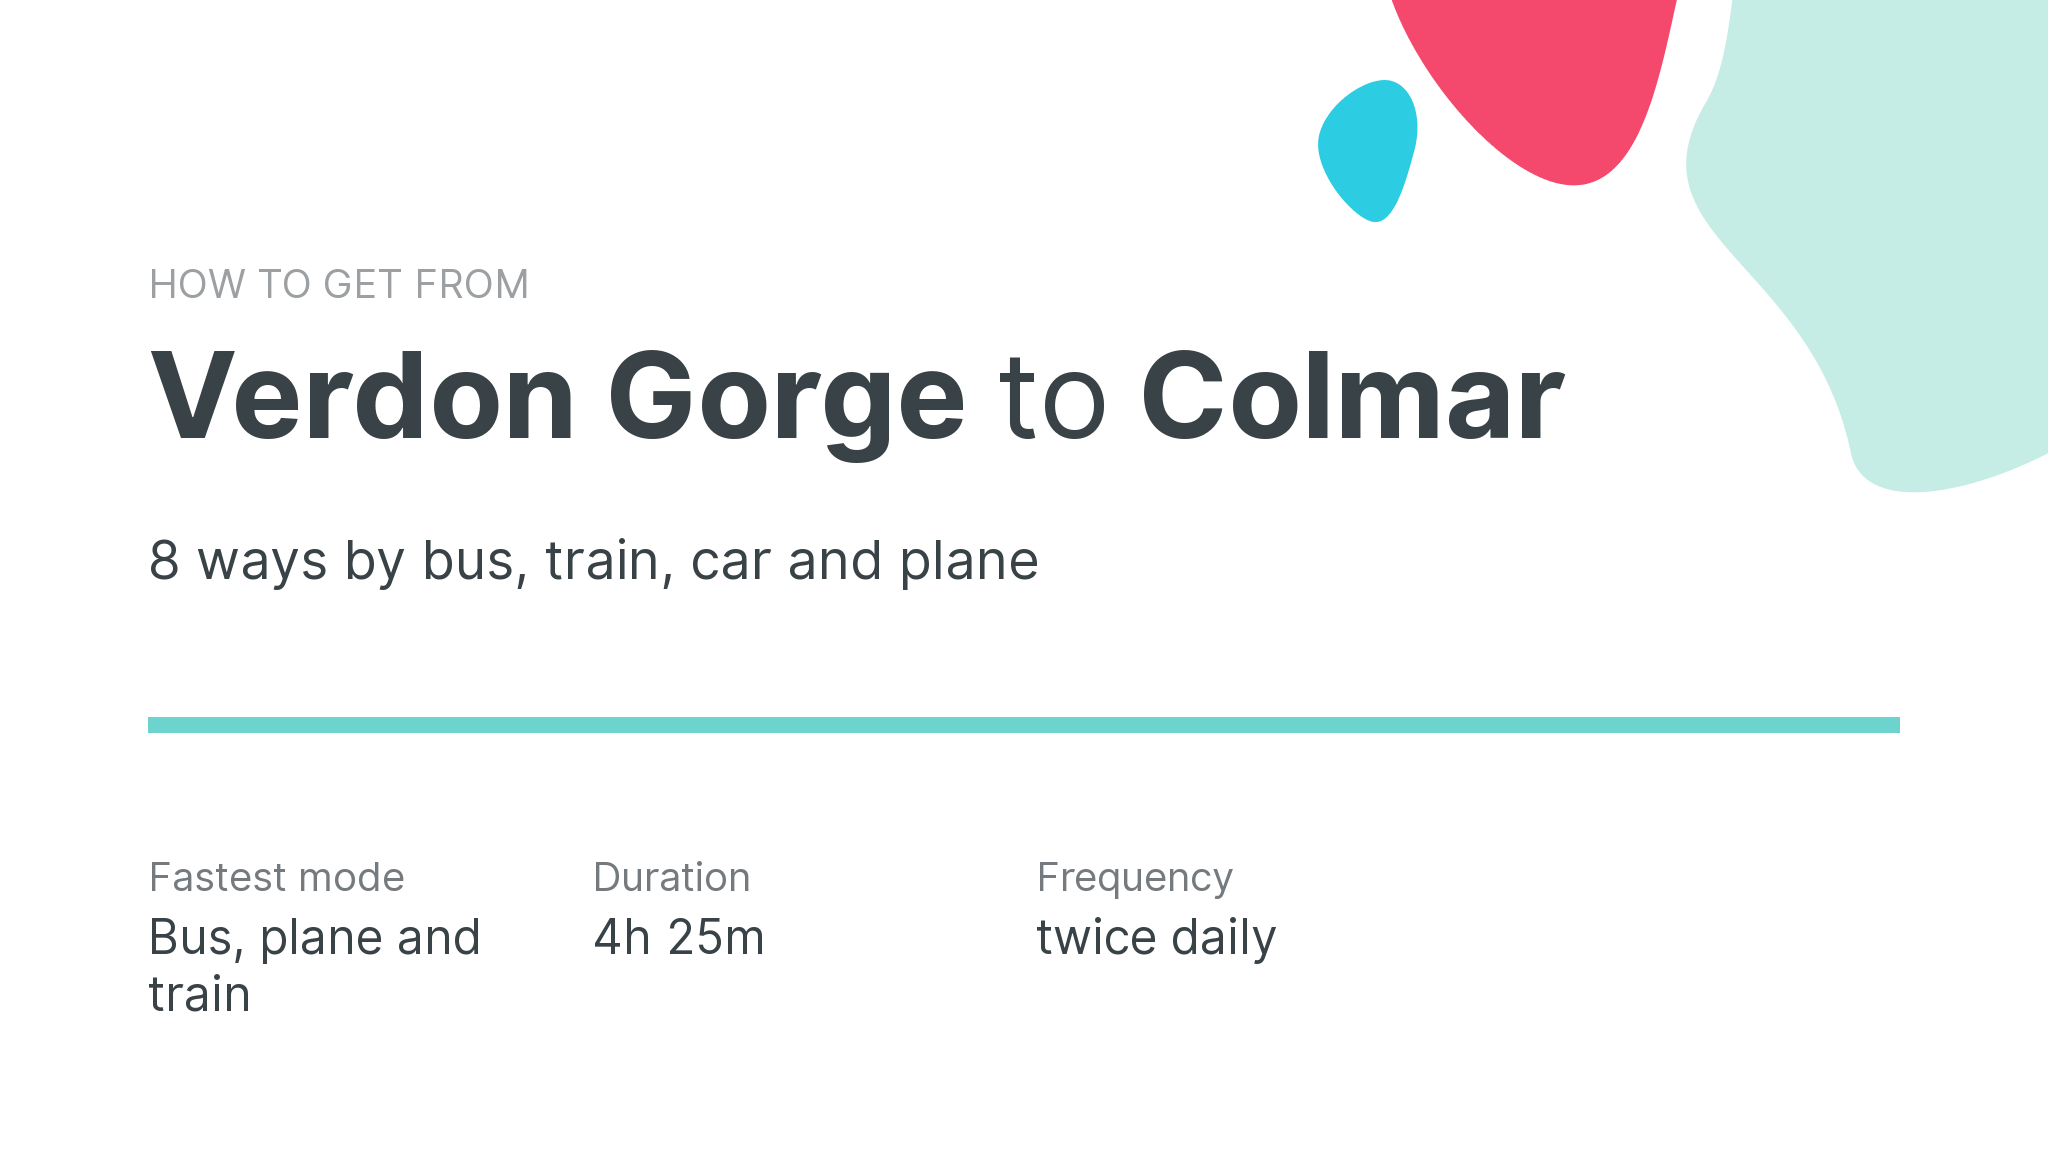 How do I get from Verdon Gorge to Colmar